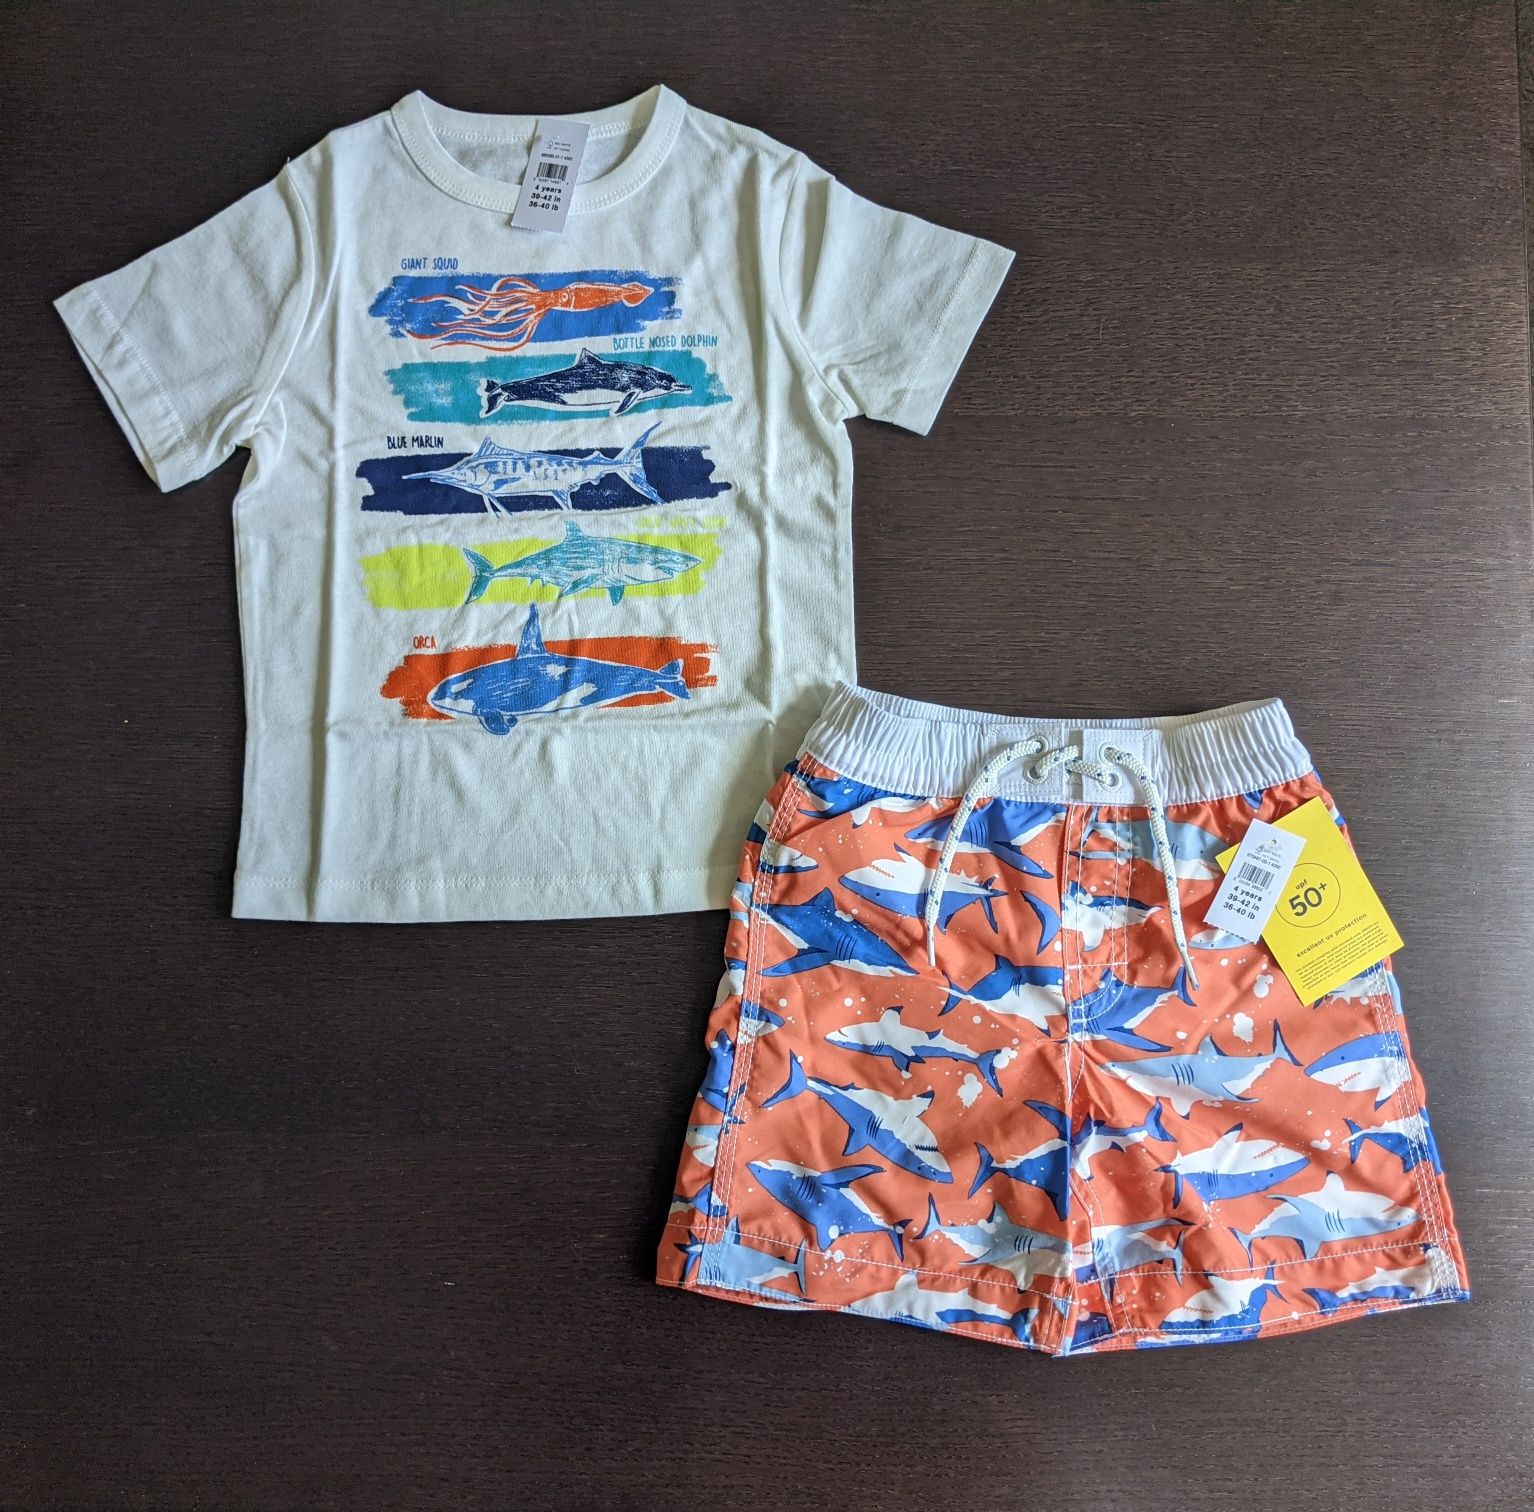 Пляжные шорты Gap 4t, футболка gap 4 года, майка, плавки 104, old navy